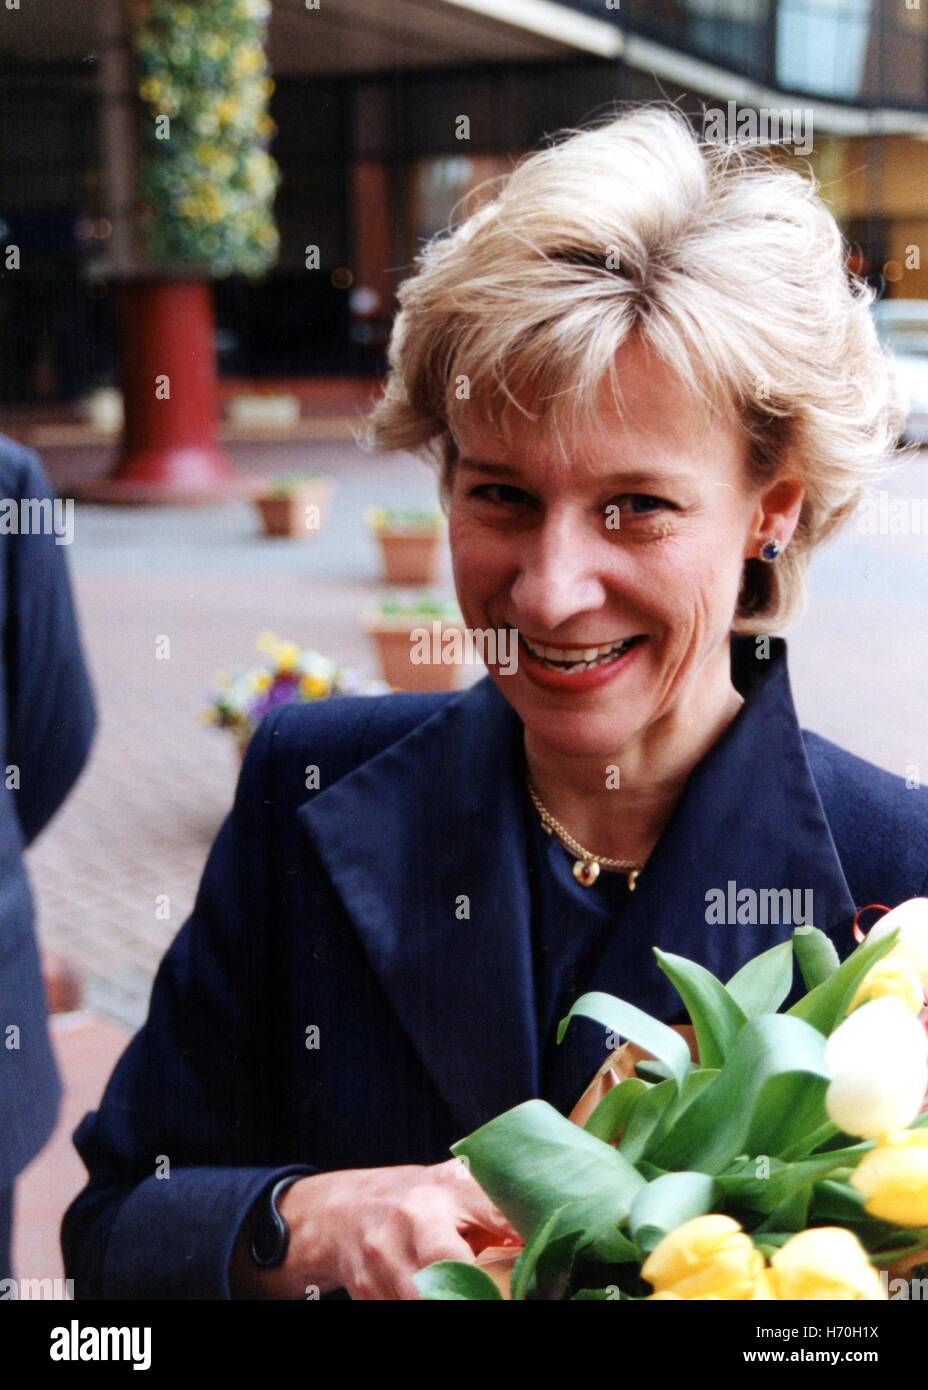 Di SUA ALTEZZA REALE IL PRINCIPE DI GALLES la Duchessa di Gloucester arriva a Harrogate Centro internazionale di conferenze di aprile 1999 Foto Stock